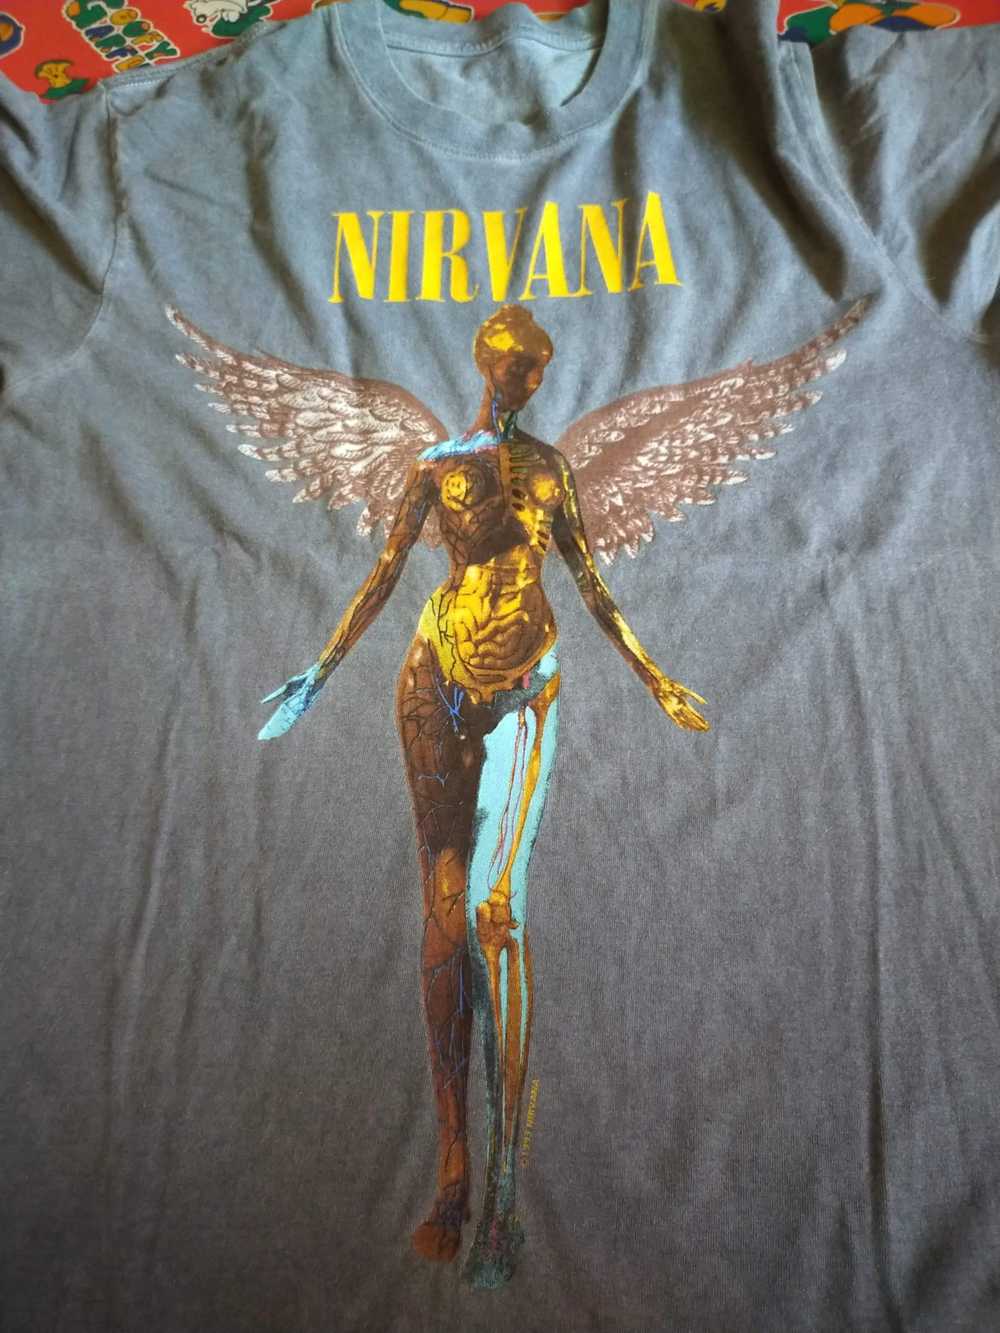 Vintage Nirvana - image 5